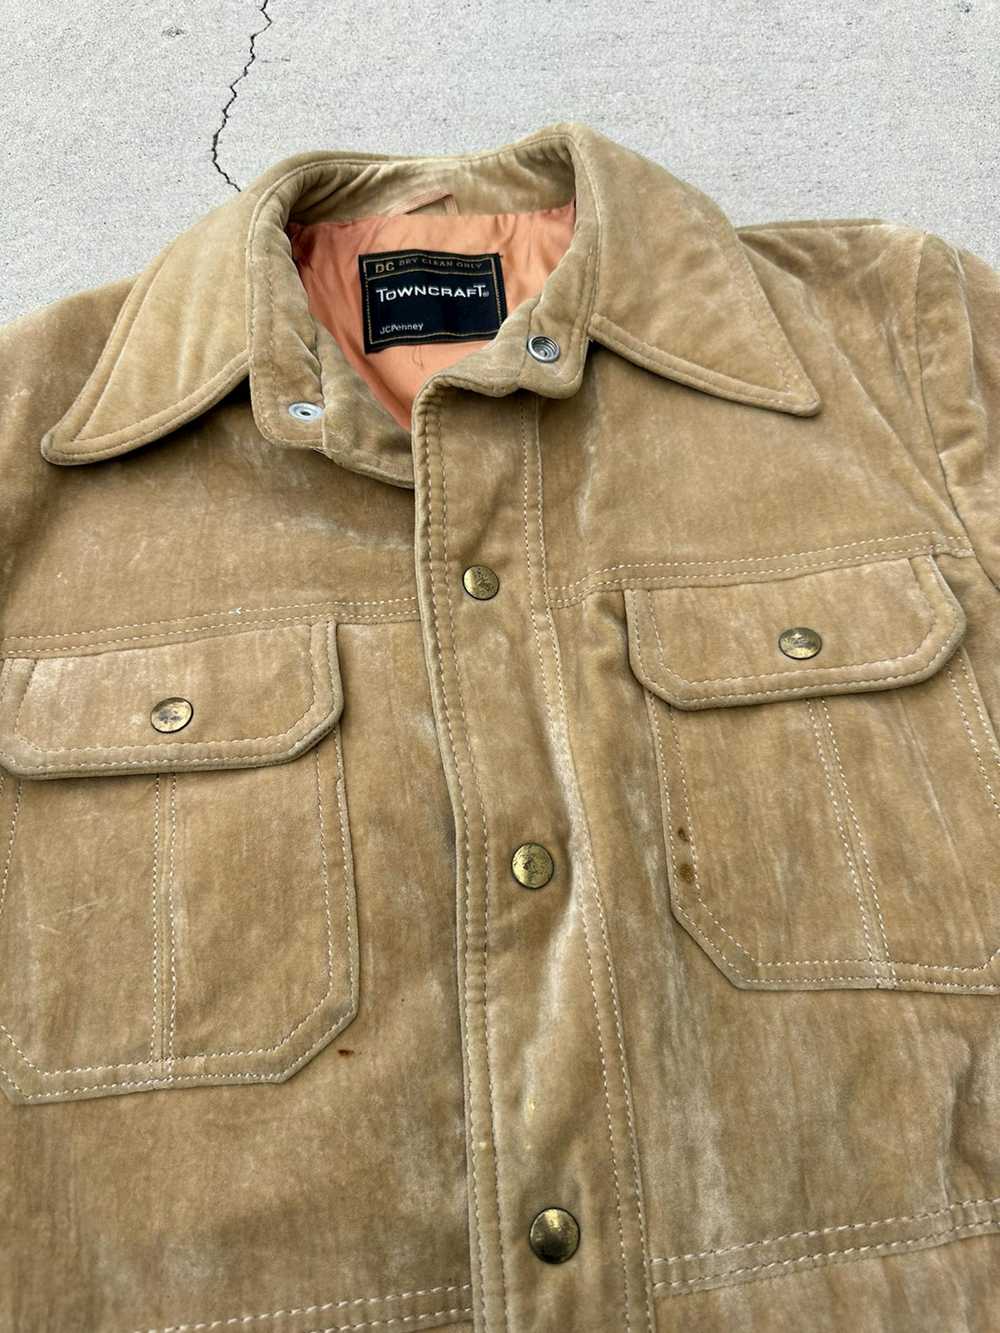 J.C. Penney × Leather Jacket × Vintage 70s Vintag… - image 8